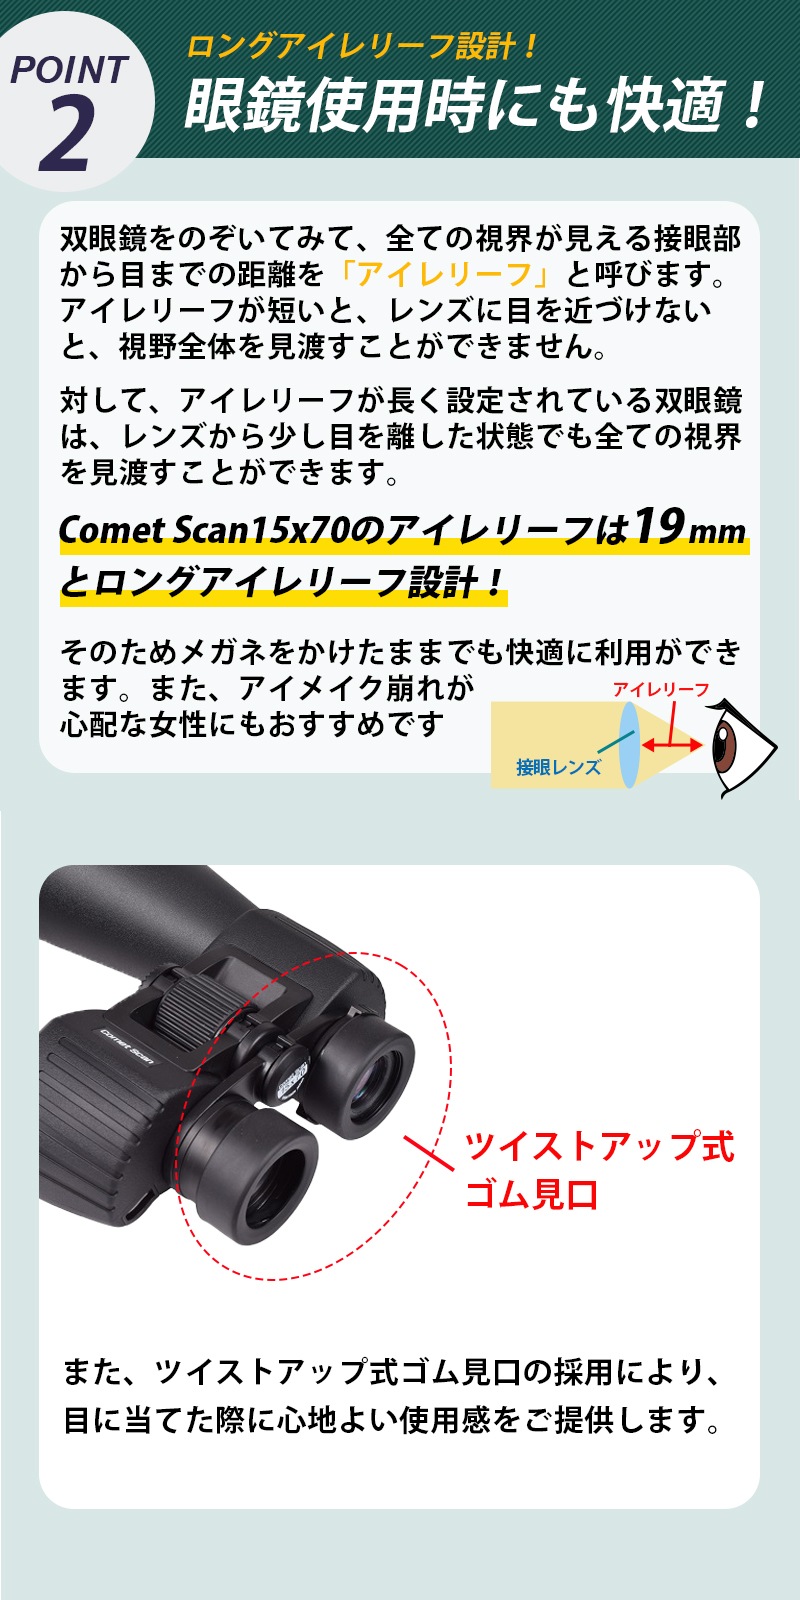 SIGHTRON サイトロン 双眼鏡 Comet Scan コメット スキャン 15x70は眼鏡使用時にも快適